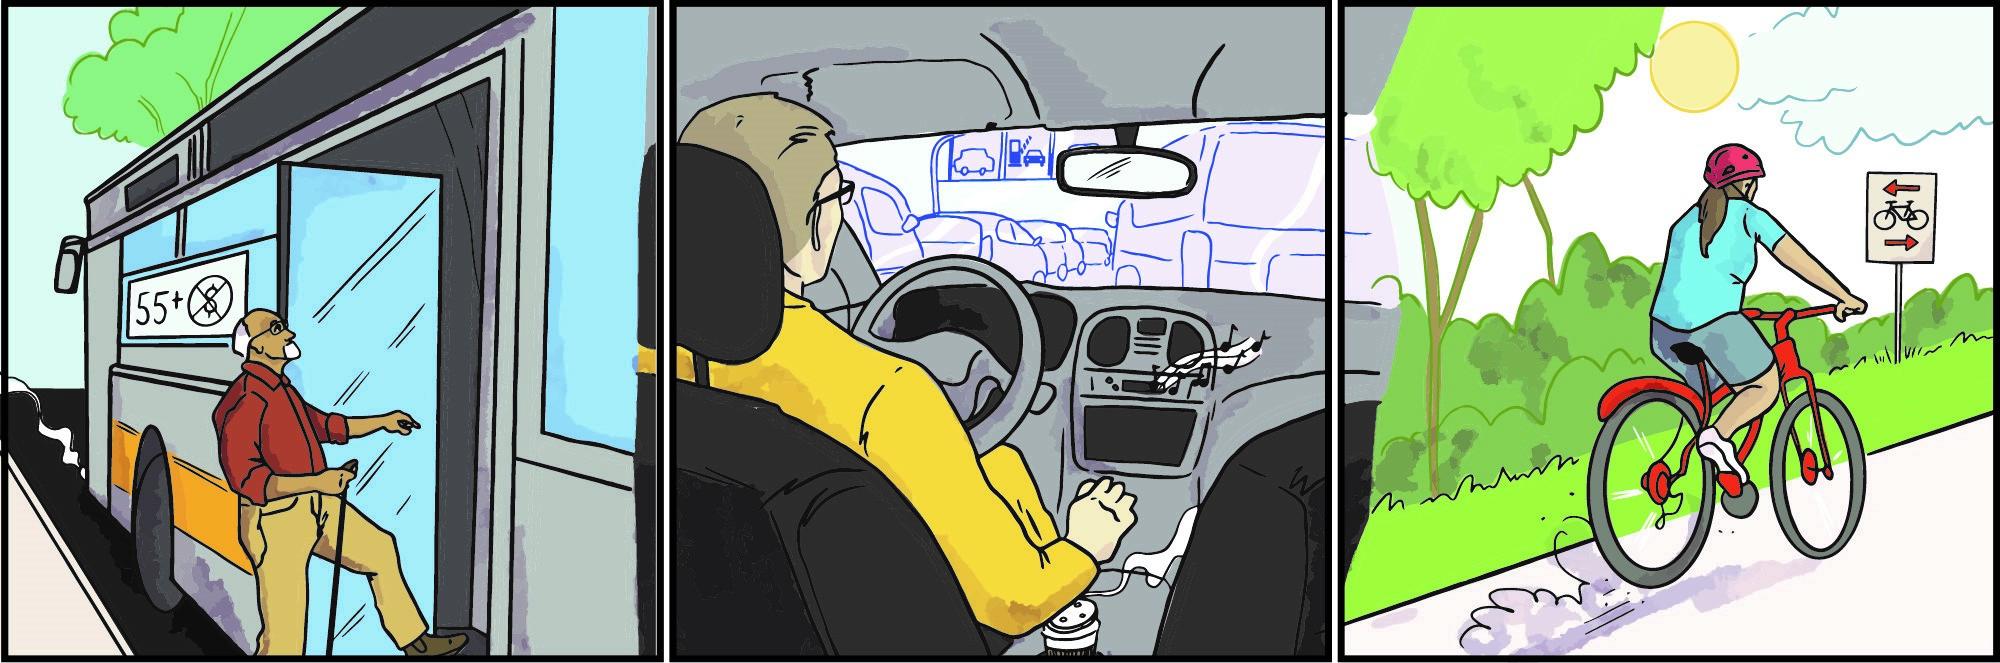 Bande dessinée en trois cases : un homme âgé prend gratuitement l’autobus; un automobiliste est coincé dans un embouteillage; une cycliste roule sur un sentier dans un parc.